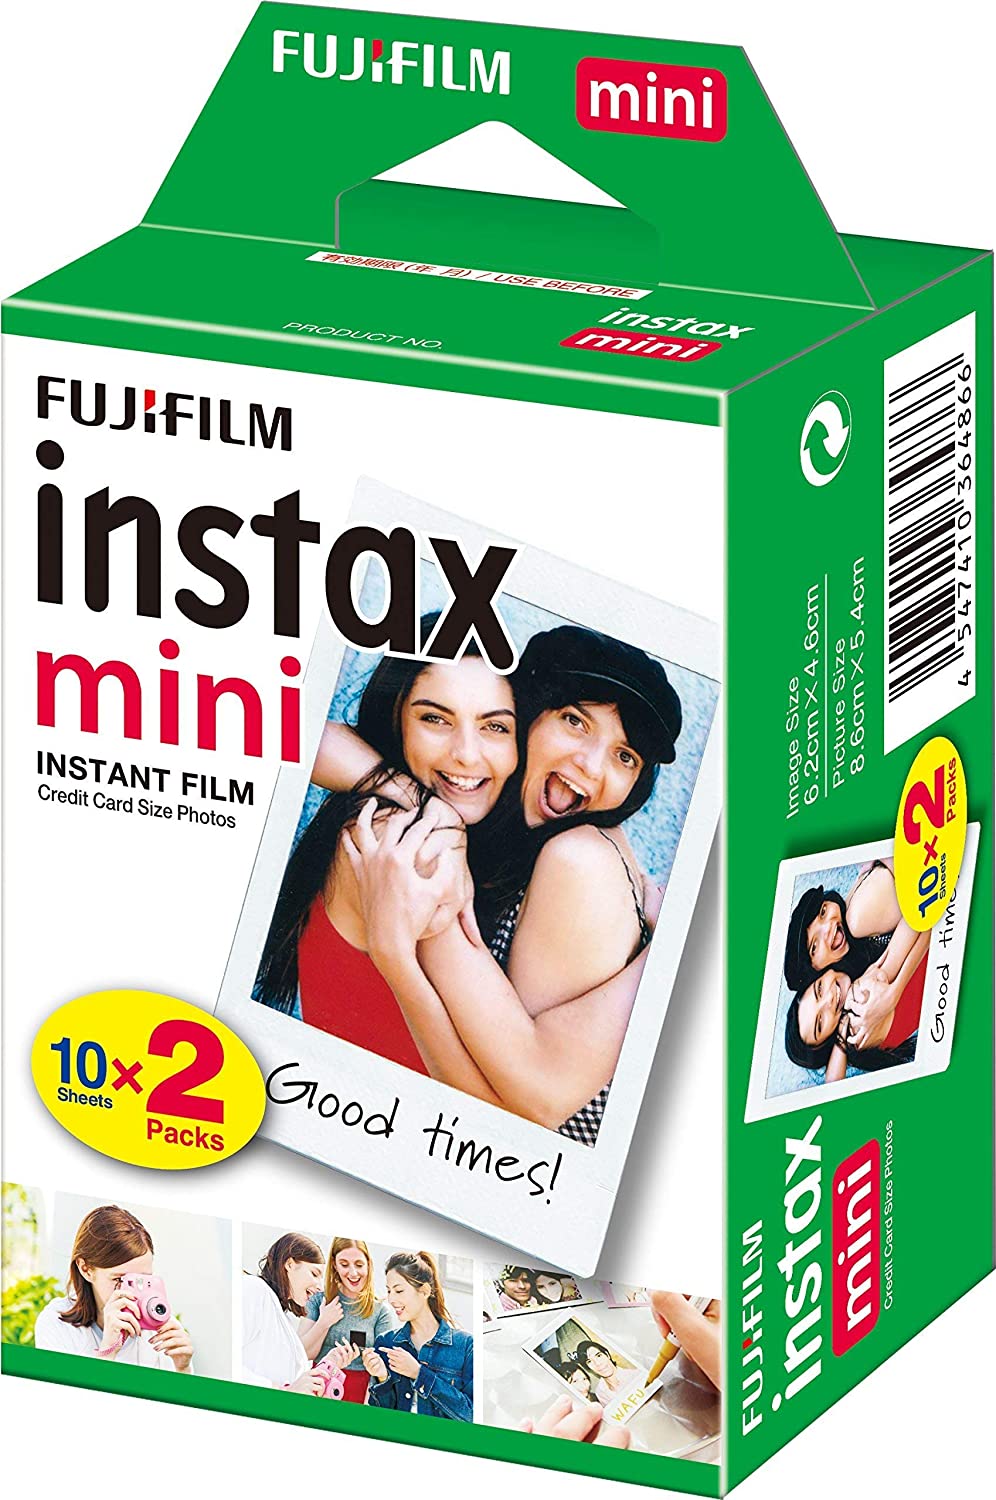  Film instant - Fujiflm Instax Mini, 2x10 | Fujifilm 